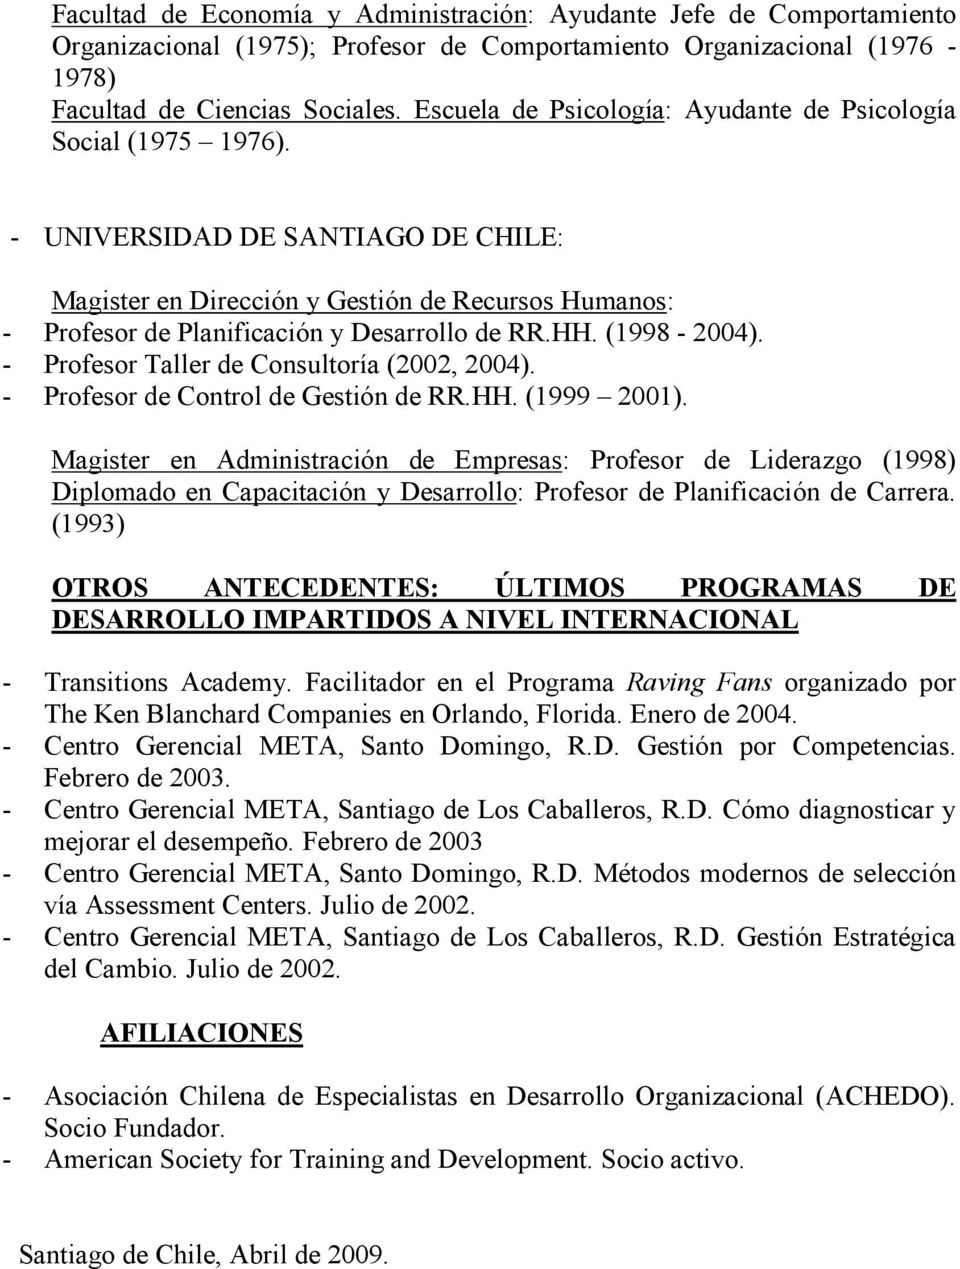 - UNIVERSIDAD DE SANTIAGO DE CHILE: Magister en Dirección y Gestión de Recursos Humanos: - Profesor de Planificación y Desarrollo de RR.HH. (1998-2004). - Profesor Taller de Consultoría (2002, 2004).